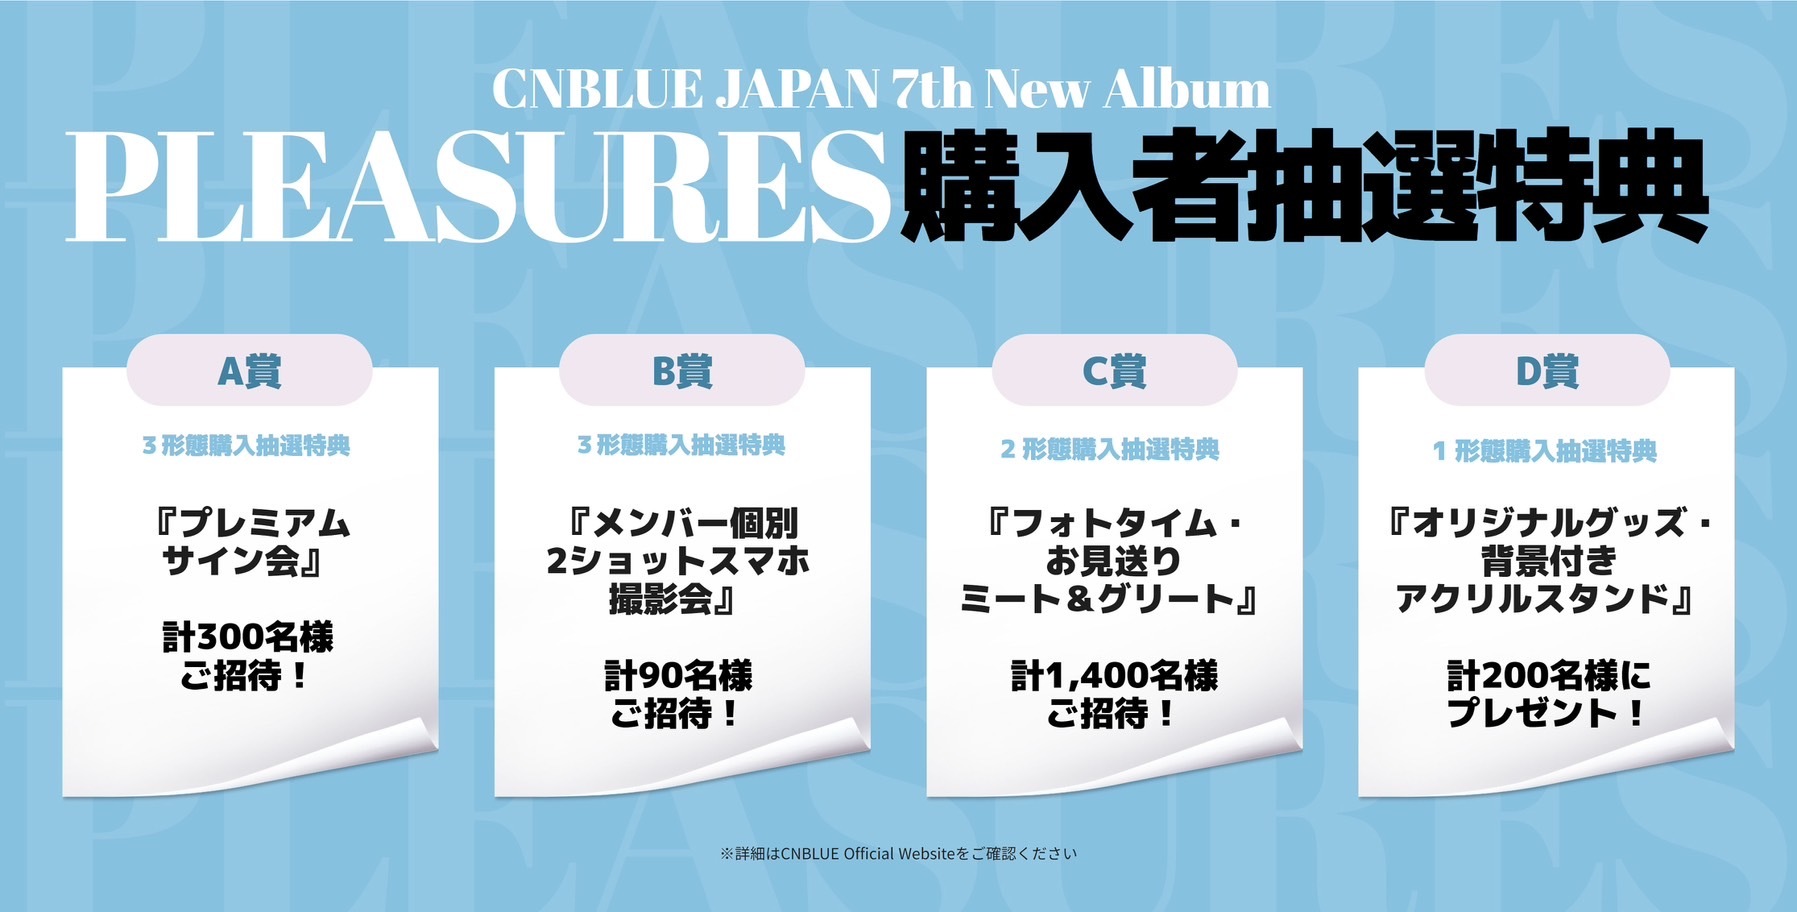 10月25日発売『PLEASURES』購入者封入応募特典決定！ | CNBLUE 